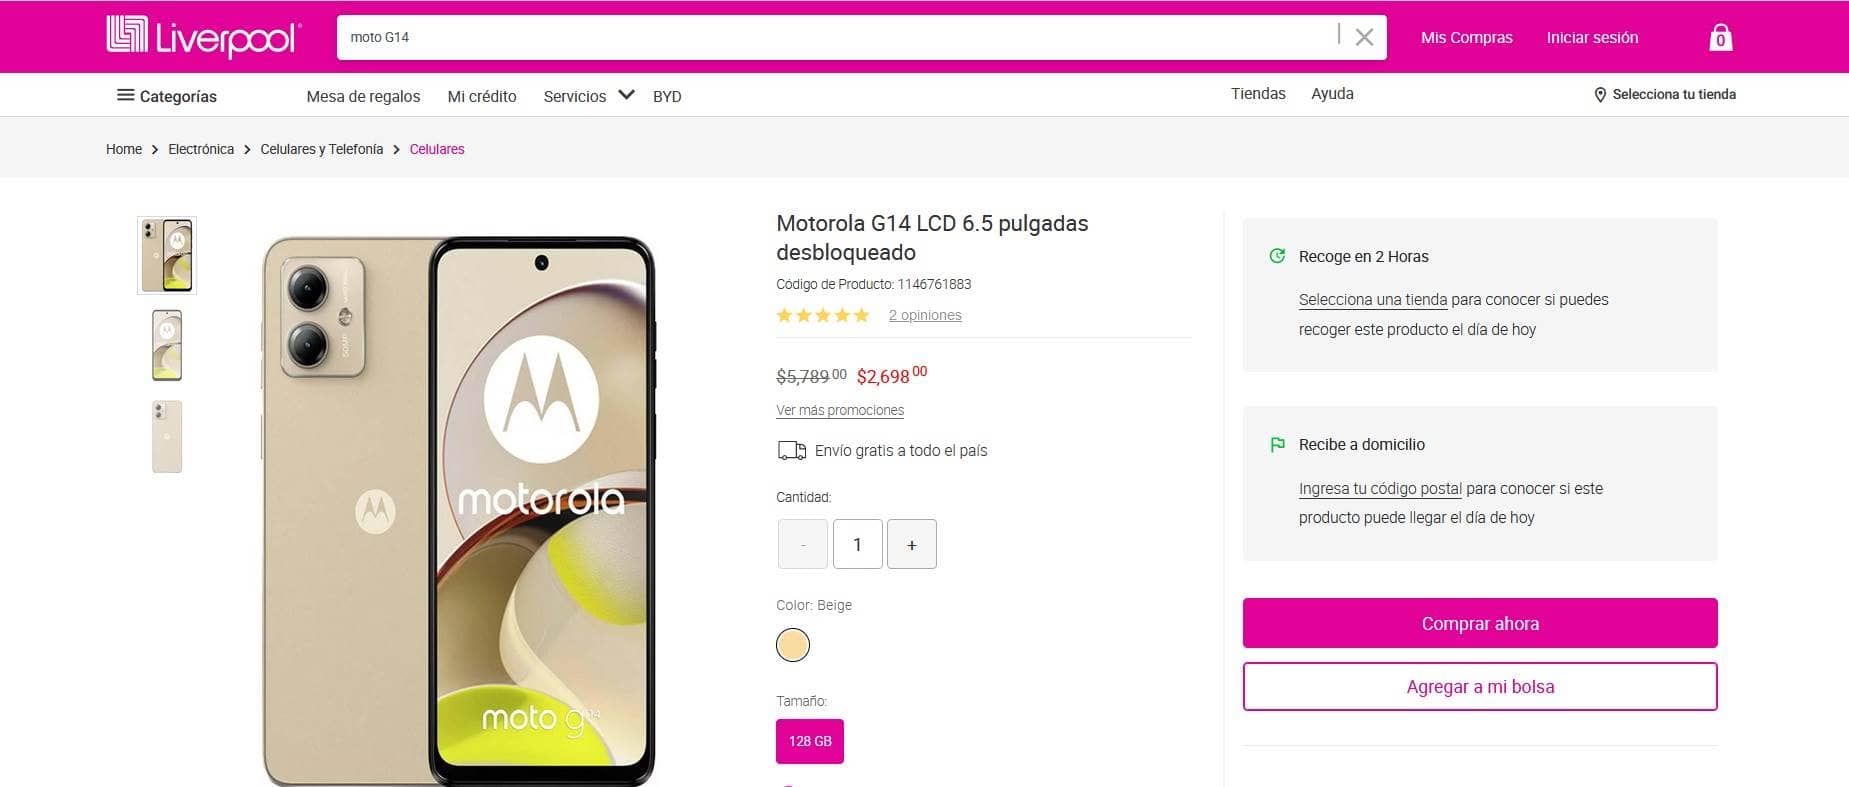 Smartphone Motorola Moto G14 y su precio de rebaja en Liverpool